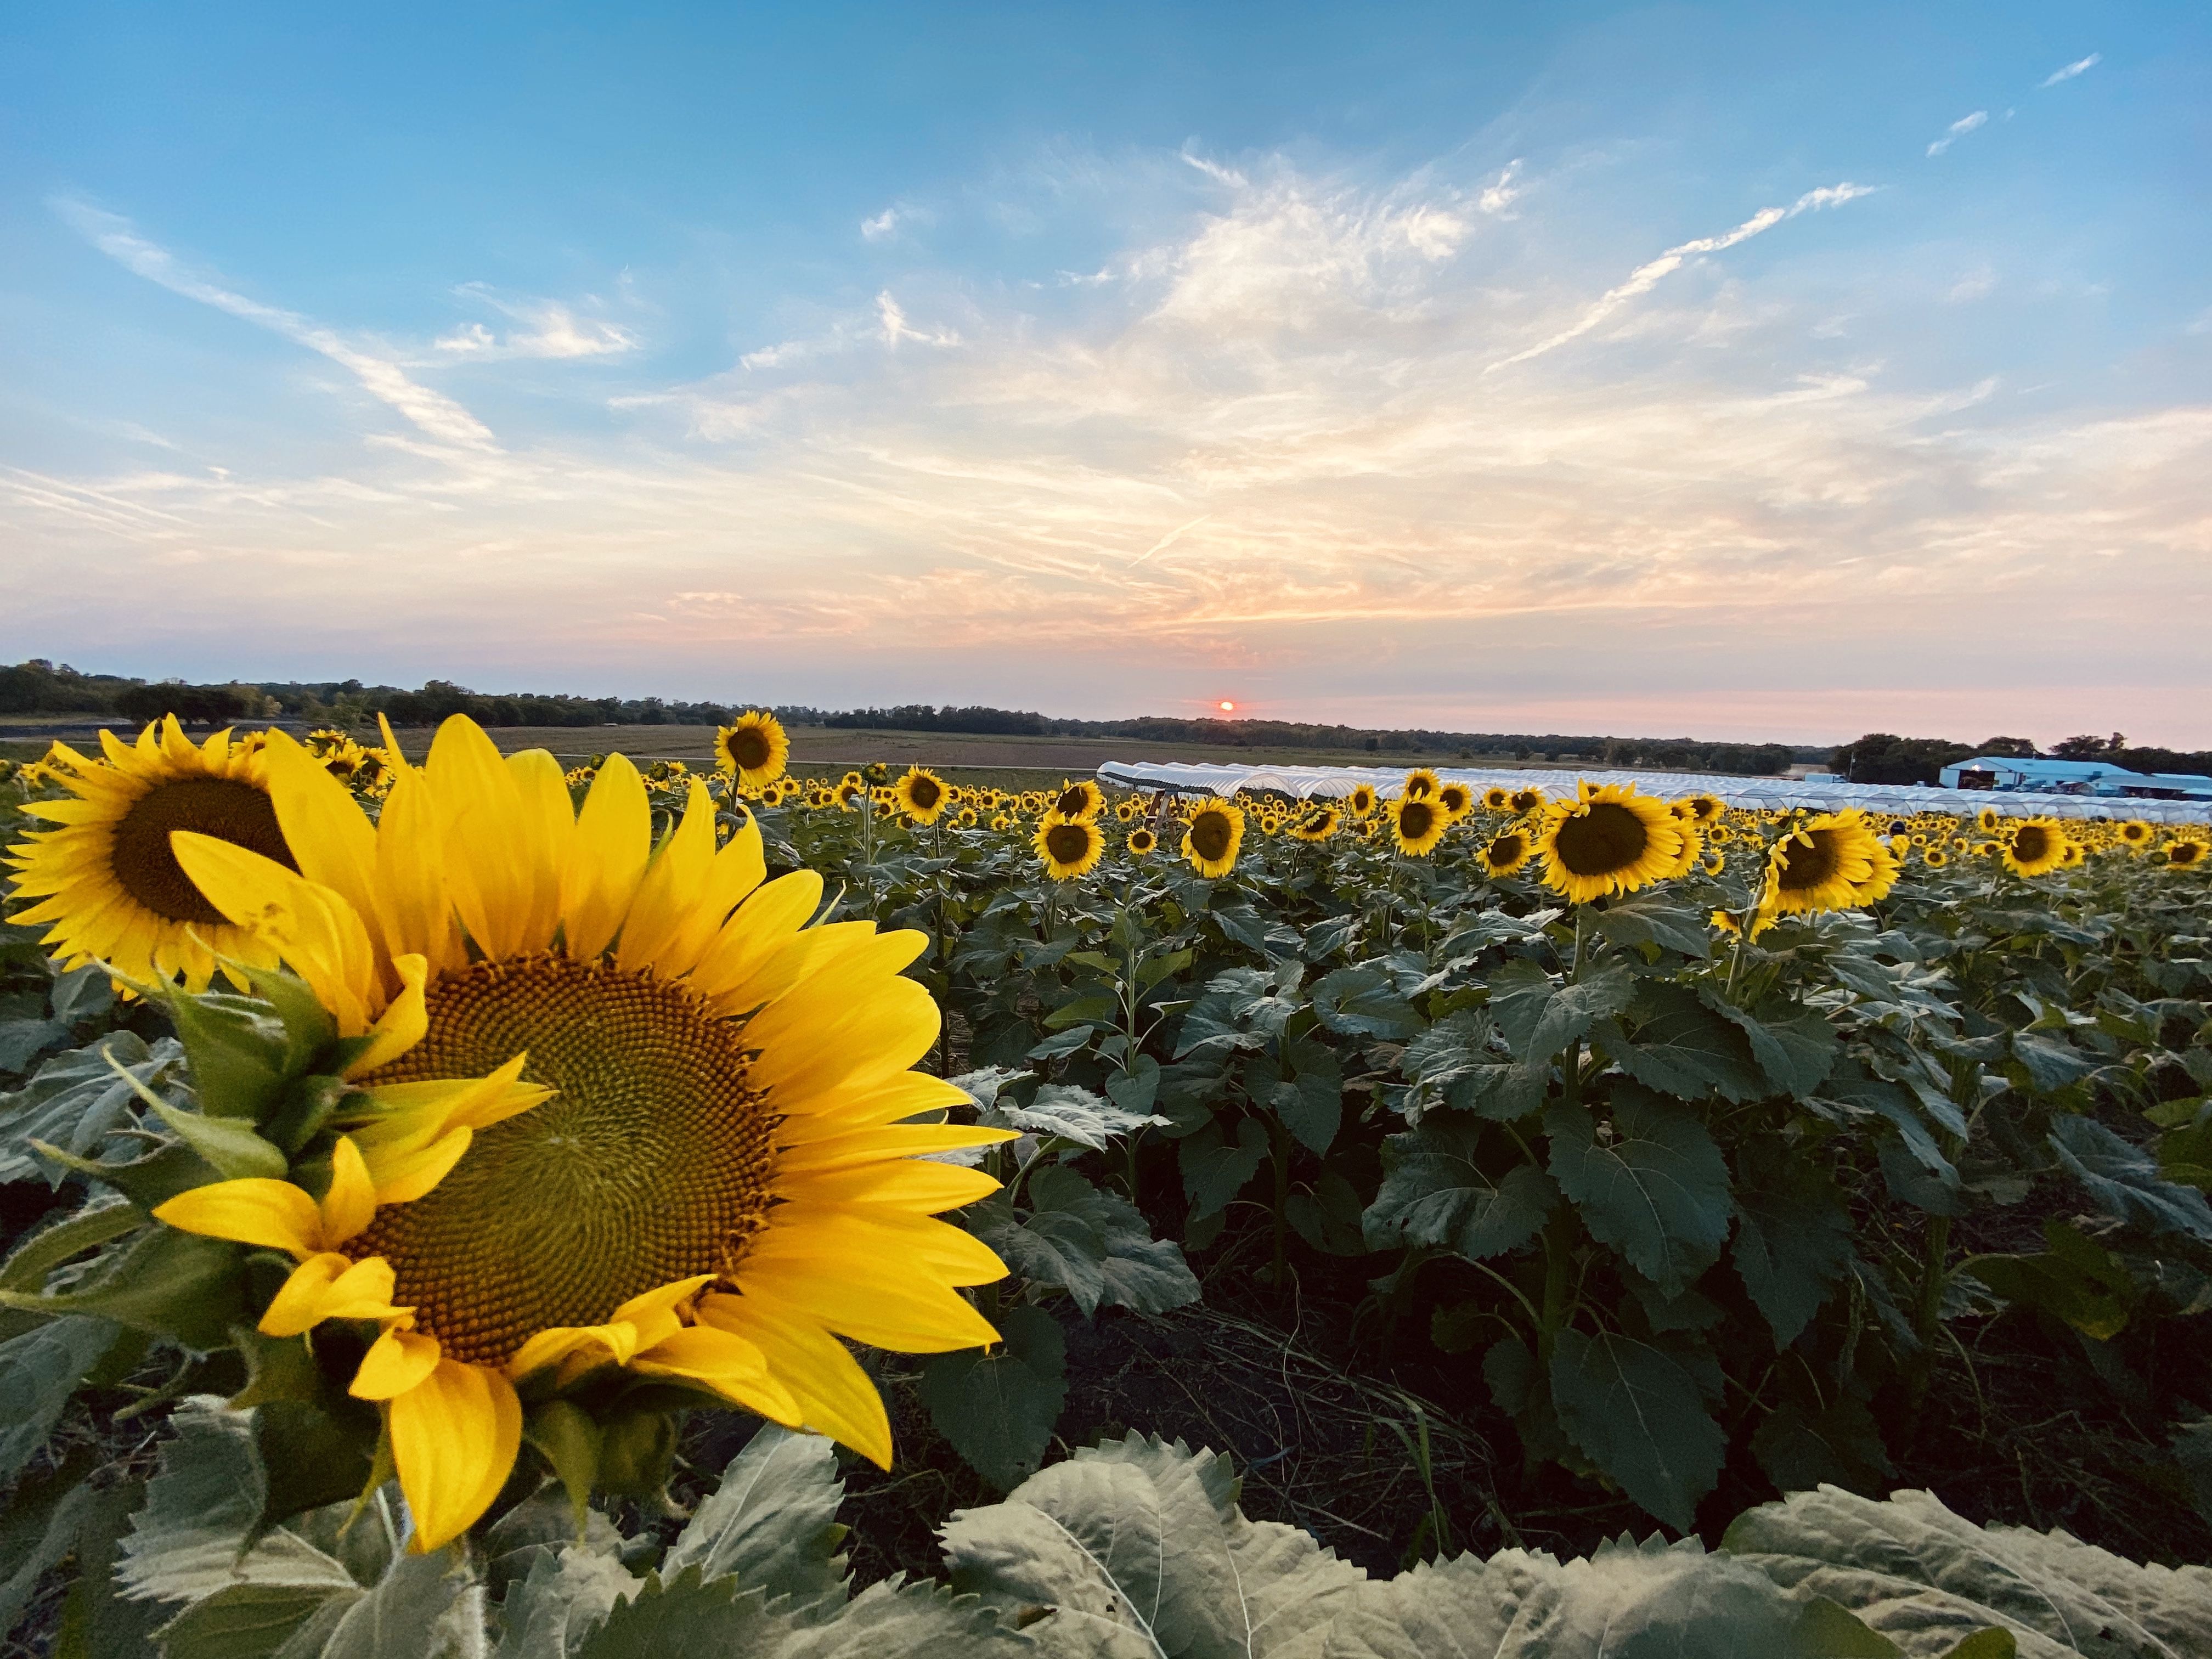 20 Best Sunflower Fields Near Me   Top Sunflower Fields in the U.S.